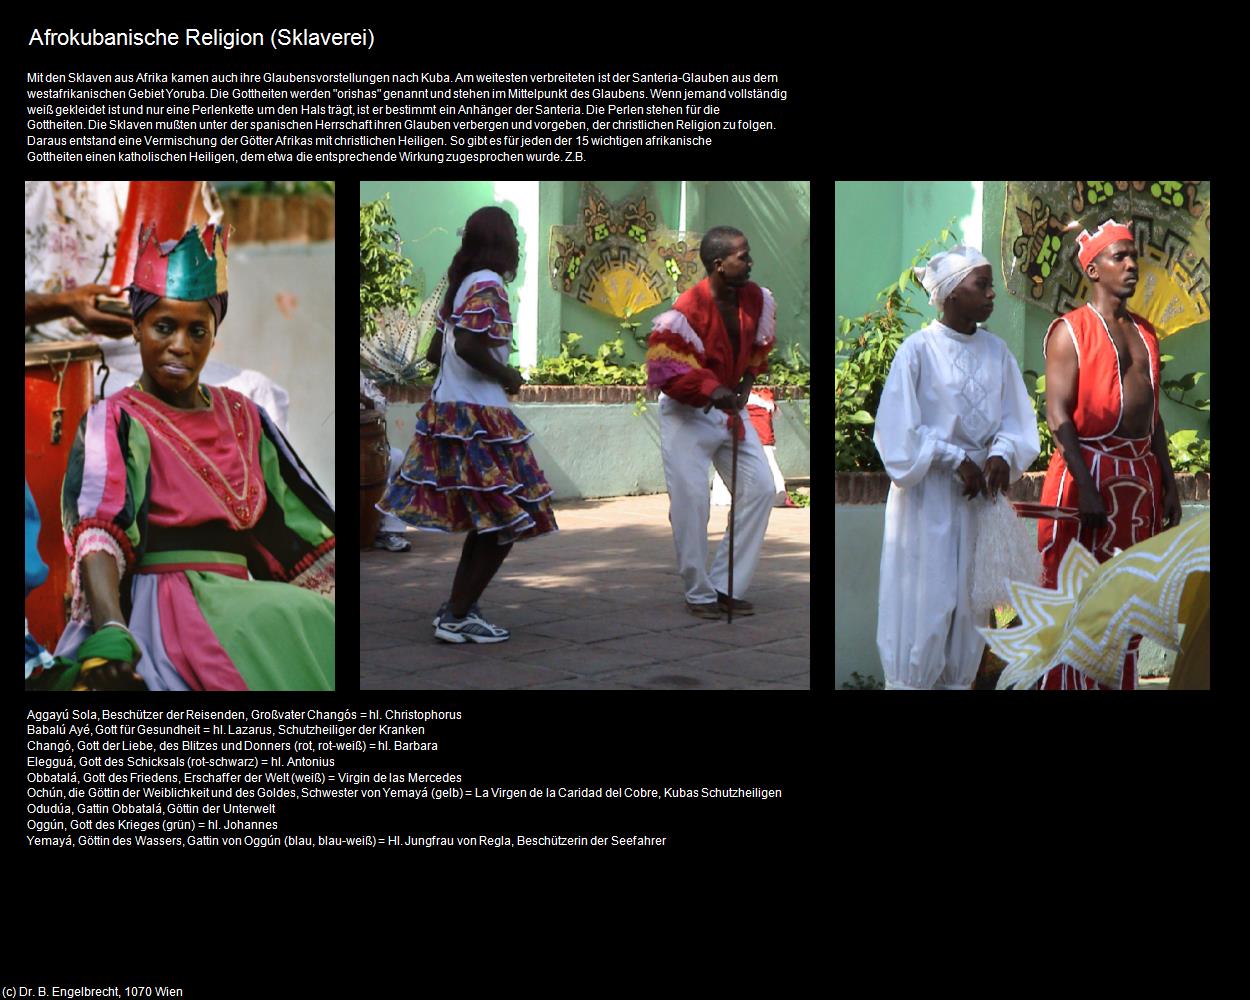 Afrokubanische Religion (SKLAVEREI) in KUBA